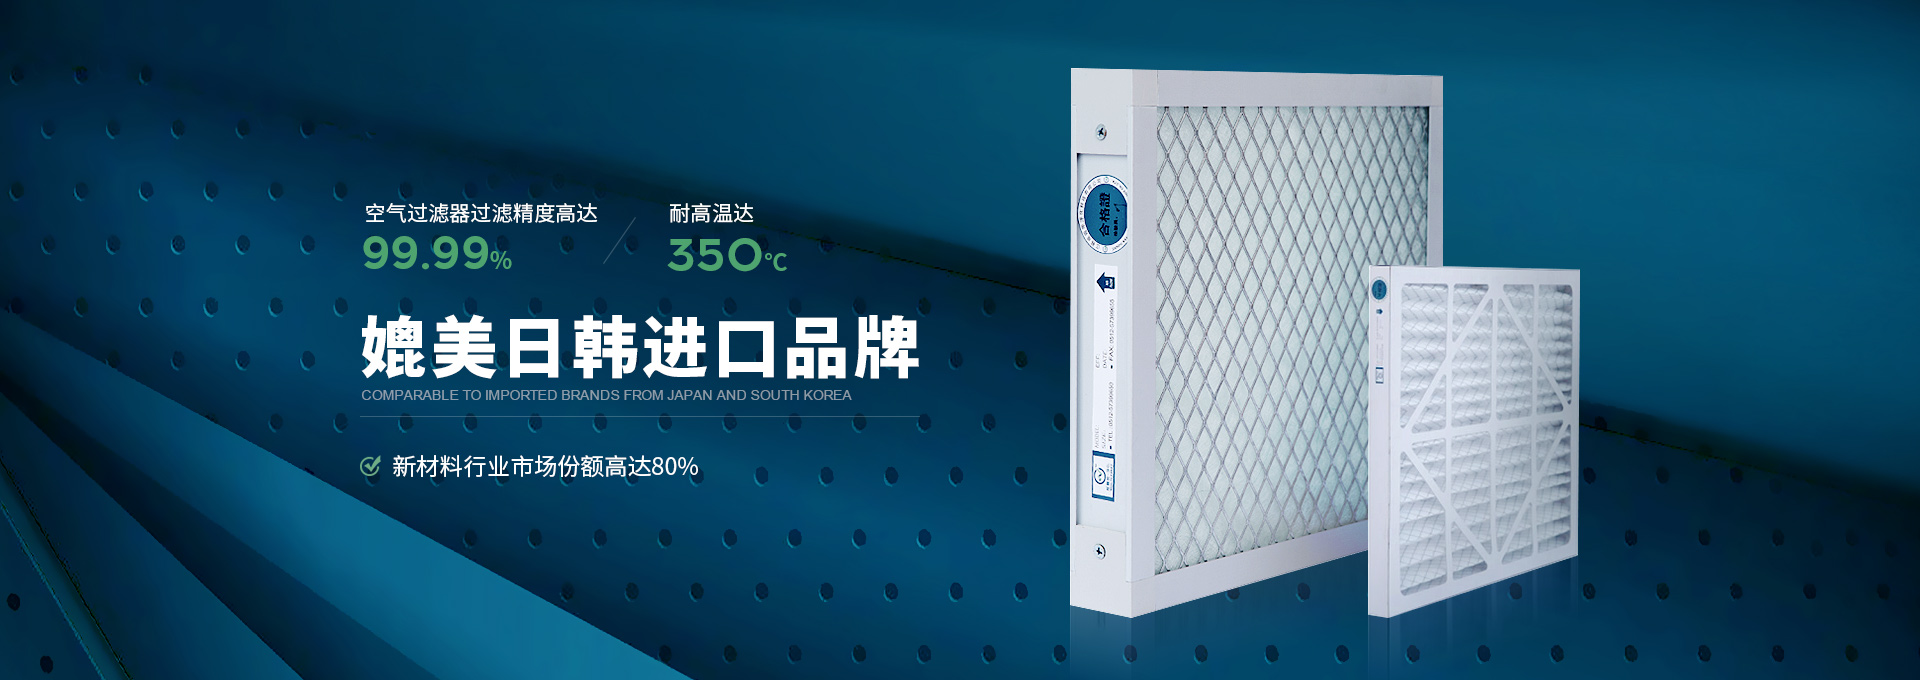 威尔斯净化空气过滤器过滤精度高达99.99%，耐高温达350℃，媲美日韩进口品牌